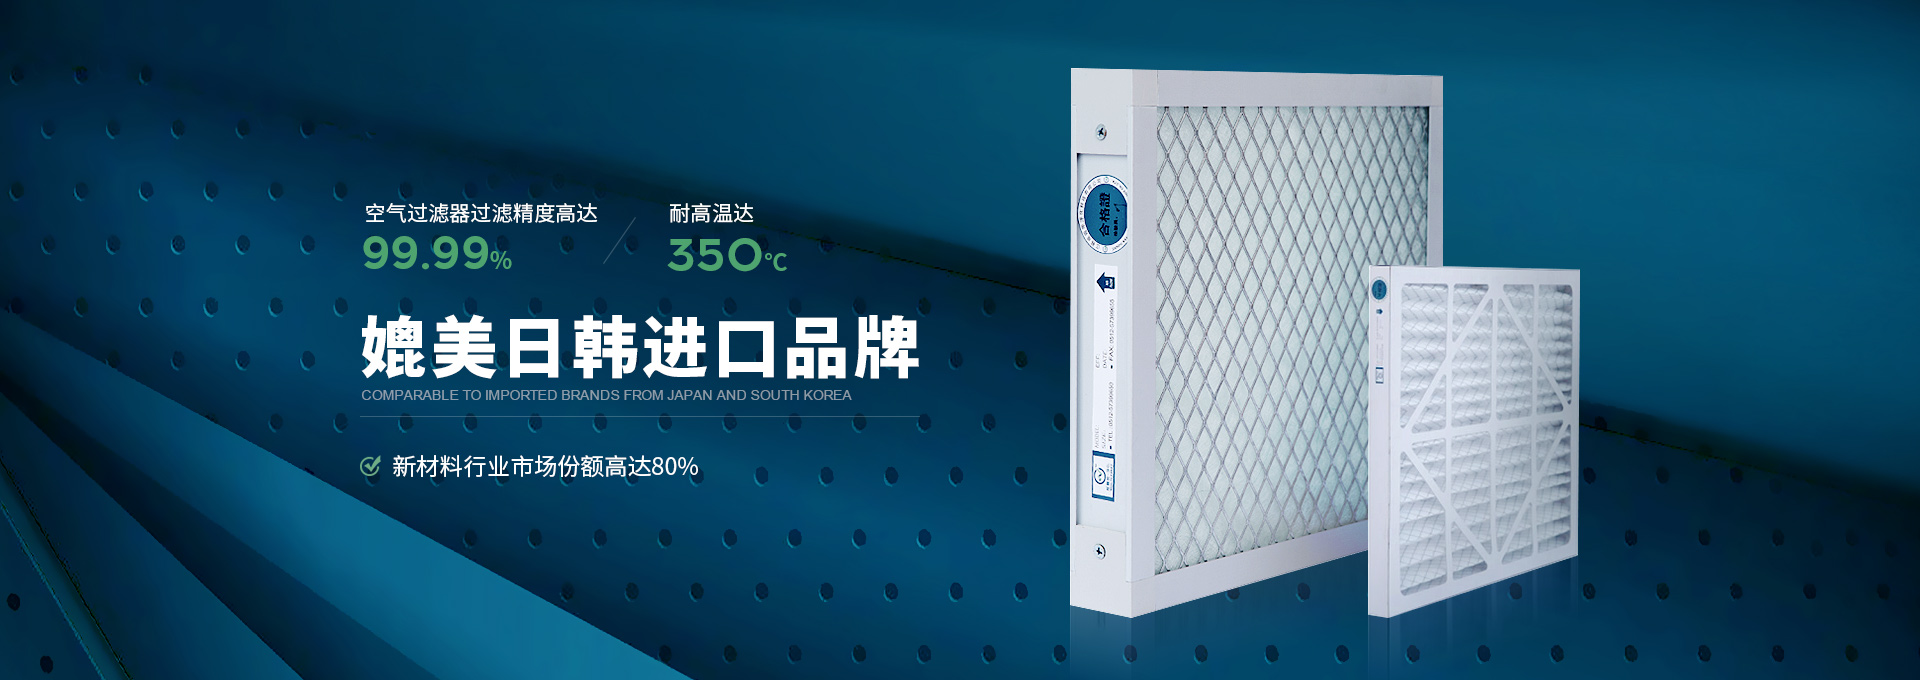 威尔斯净化空气过滤器过滤精度高达99.99%，耐高温达350℃，媲美日韩进口品牌